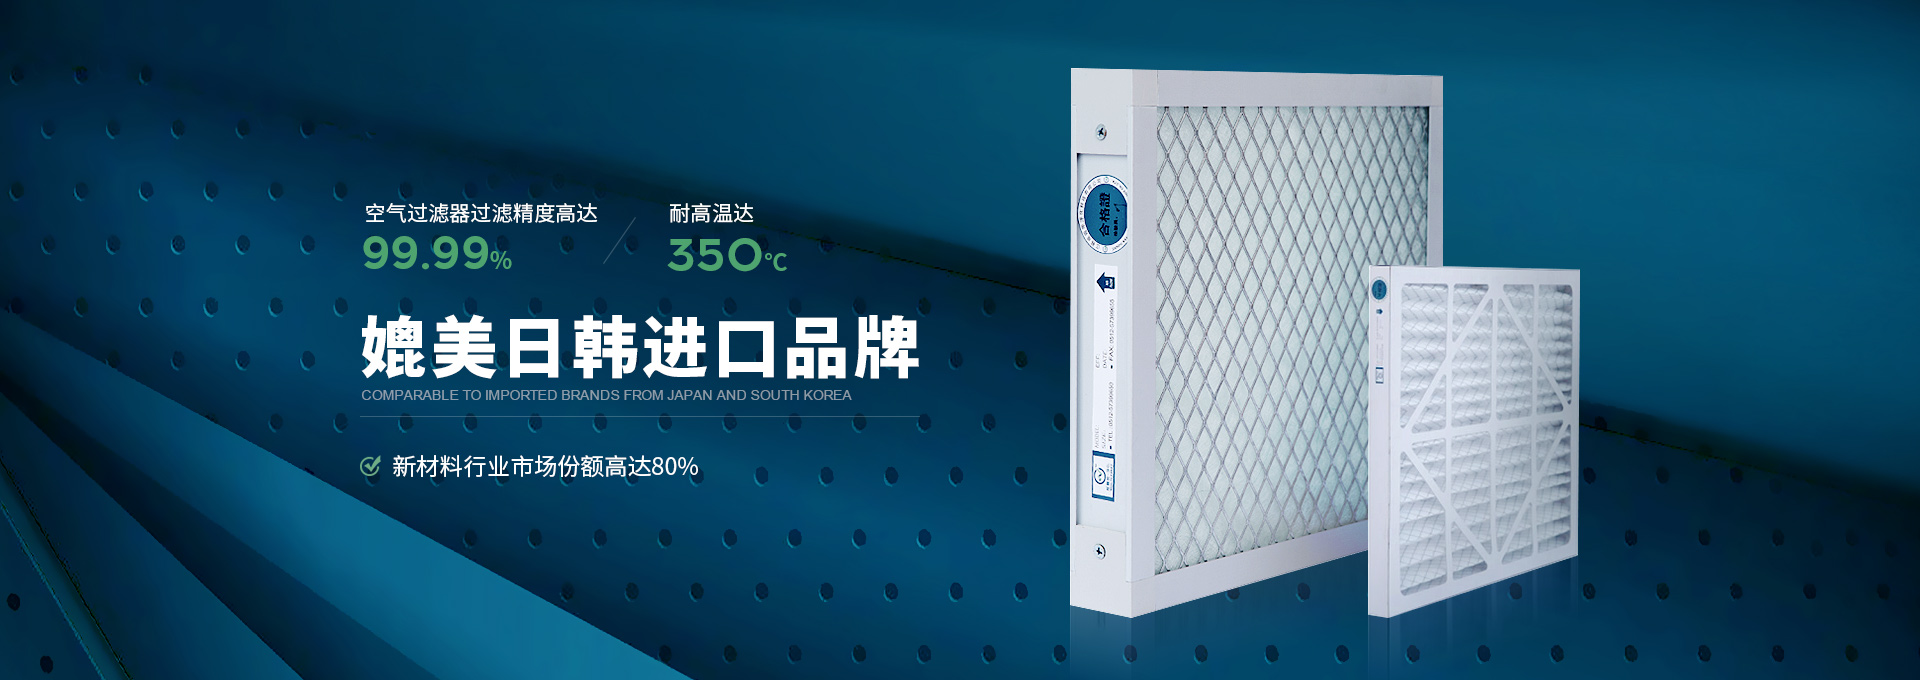 威尔斯净化空气过滤器过滤精度高达99.99%，耐高温达350℃，媲美日韩进口品牌